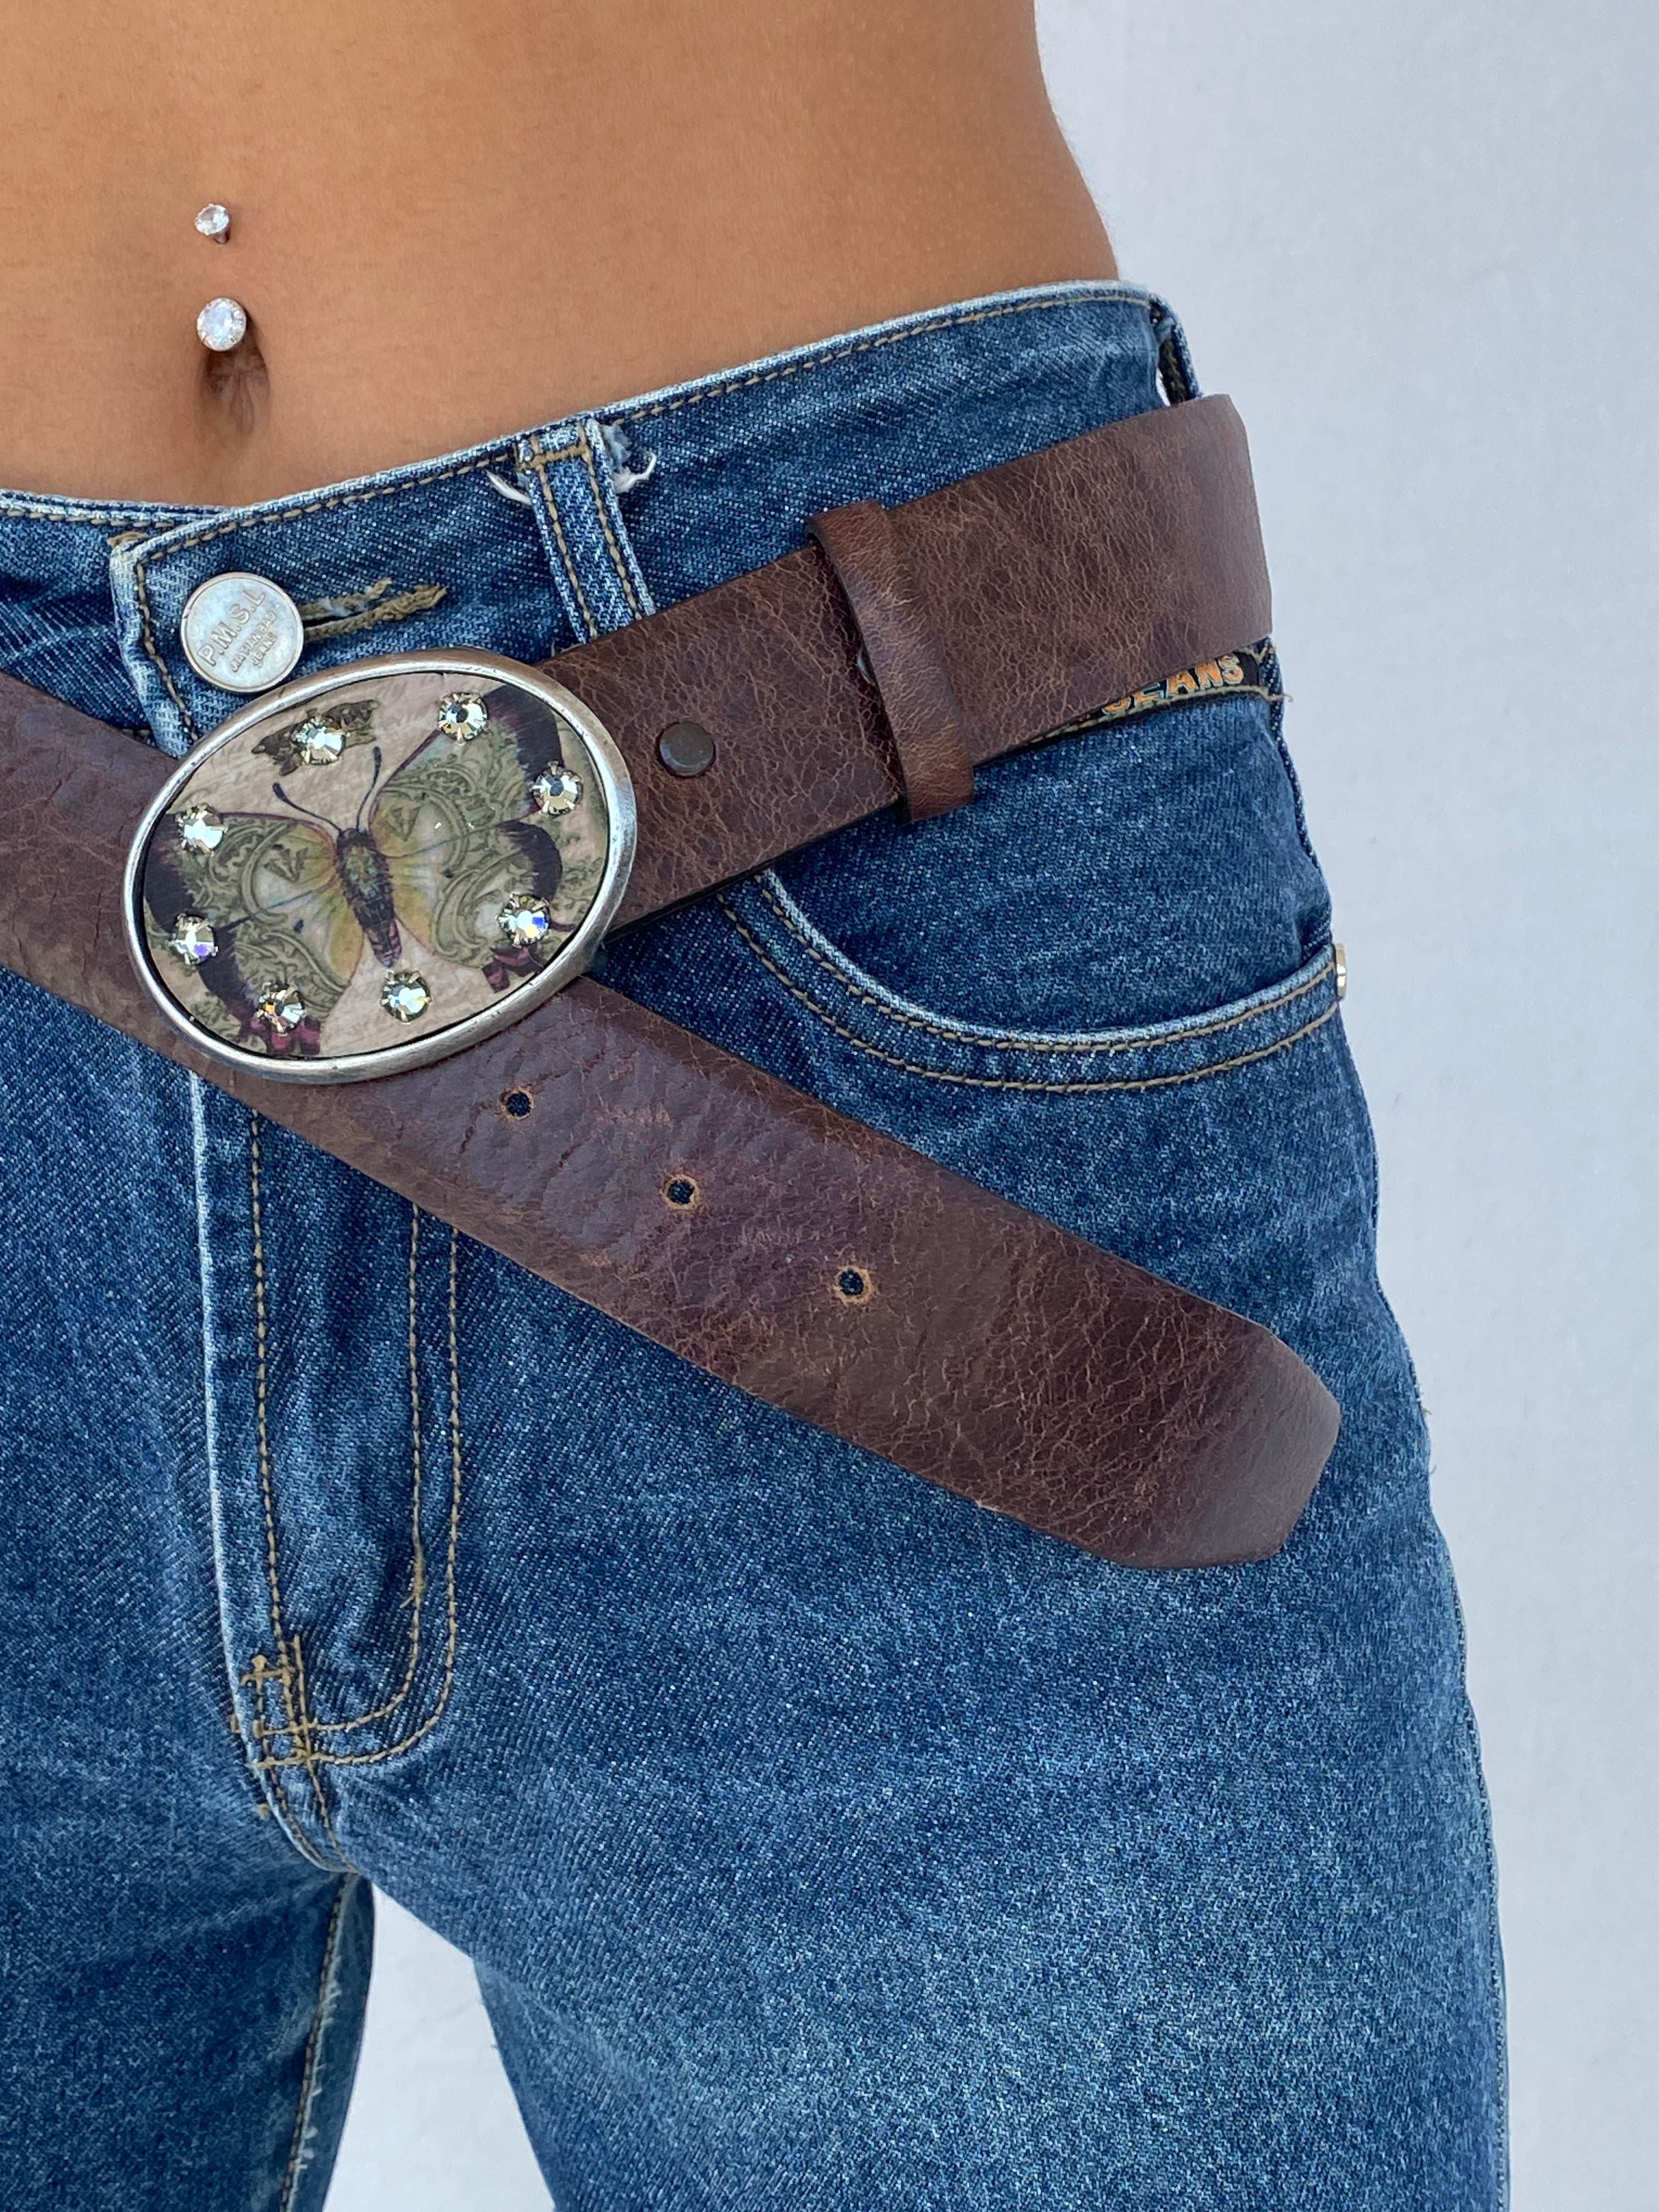 Vintage Michael Graham Western Genuine Leather Belt - Balagan Vintage Belt 80s, belt